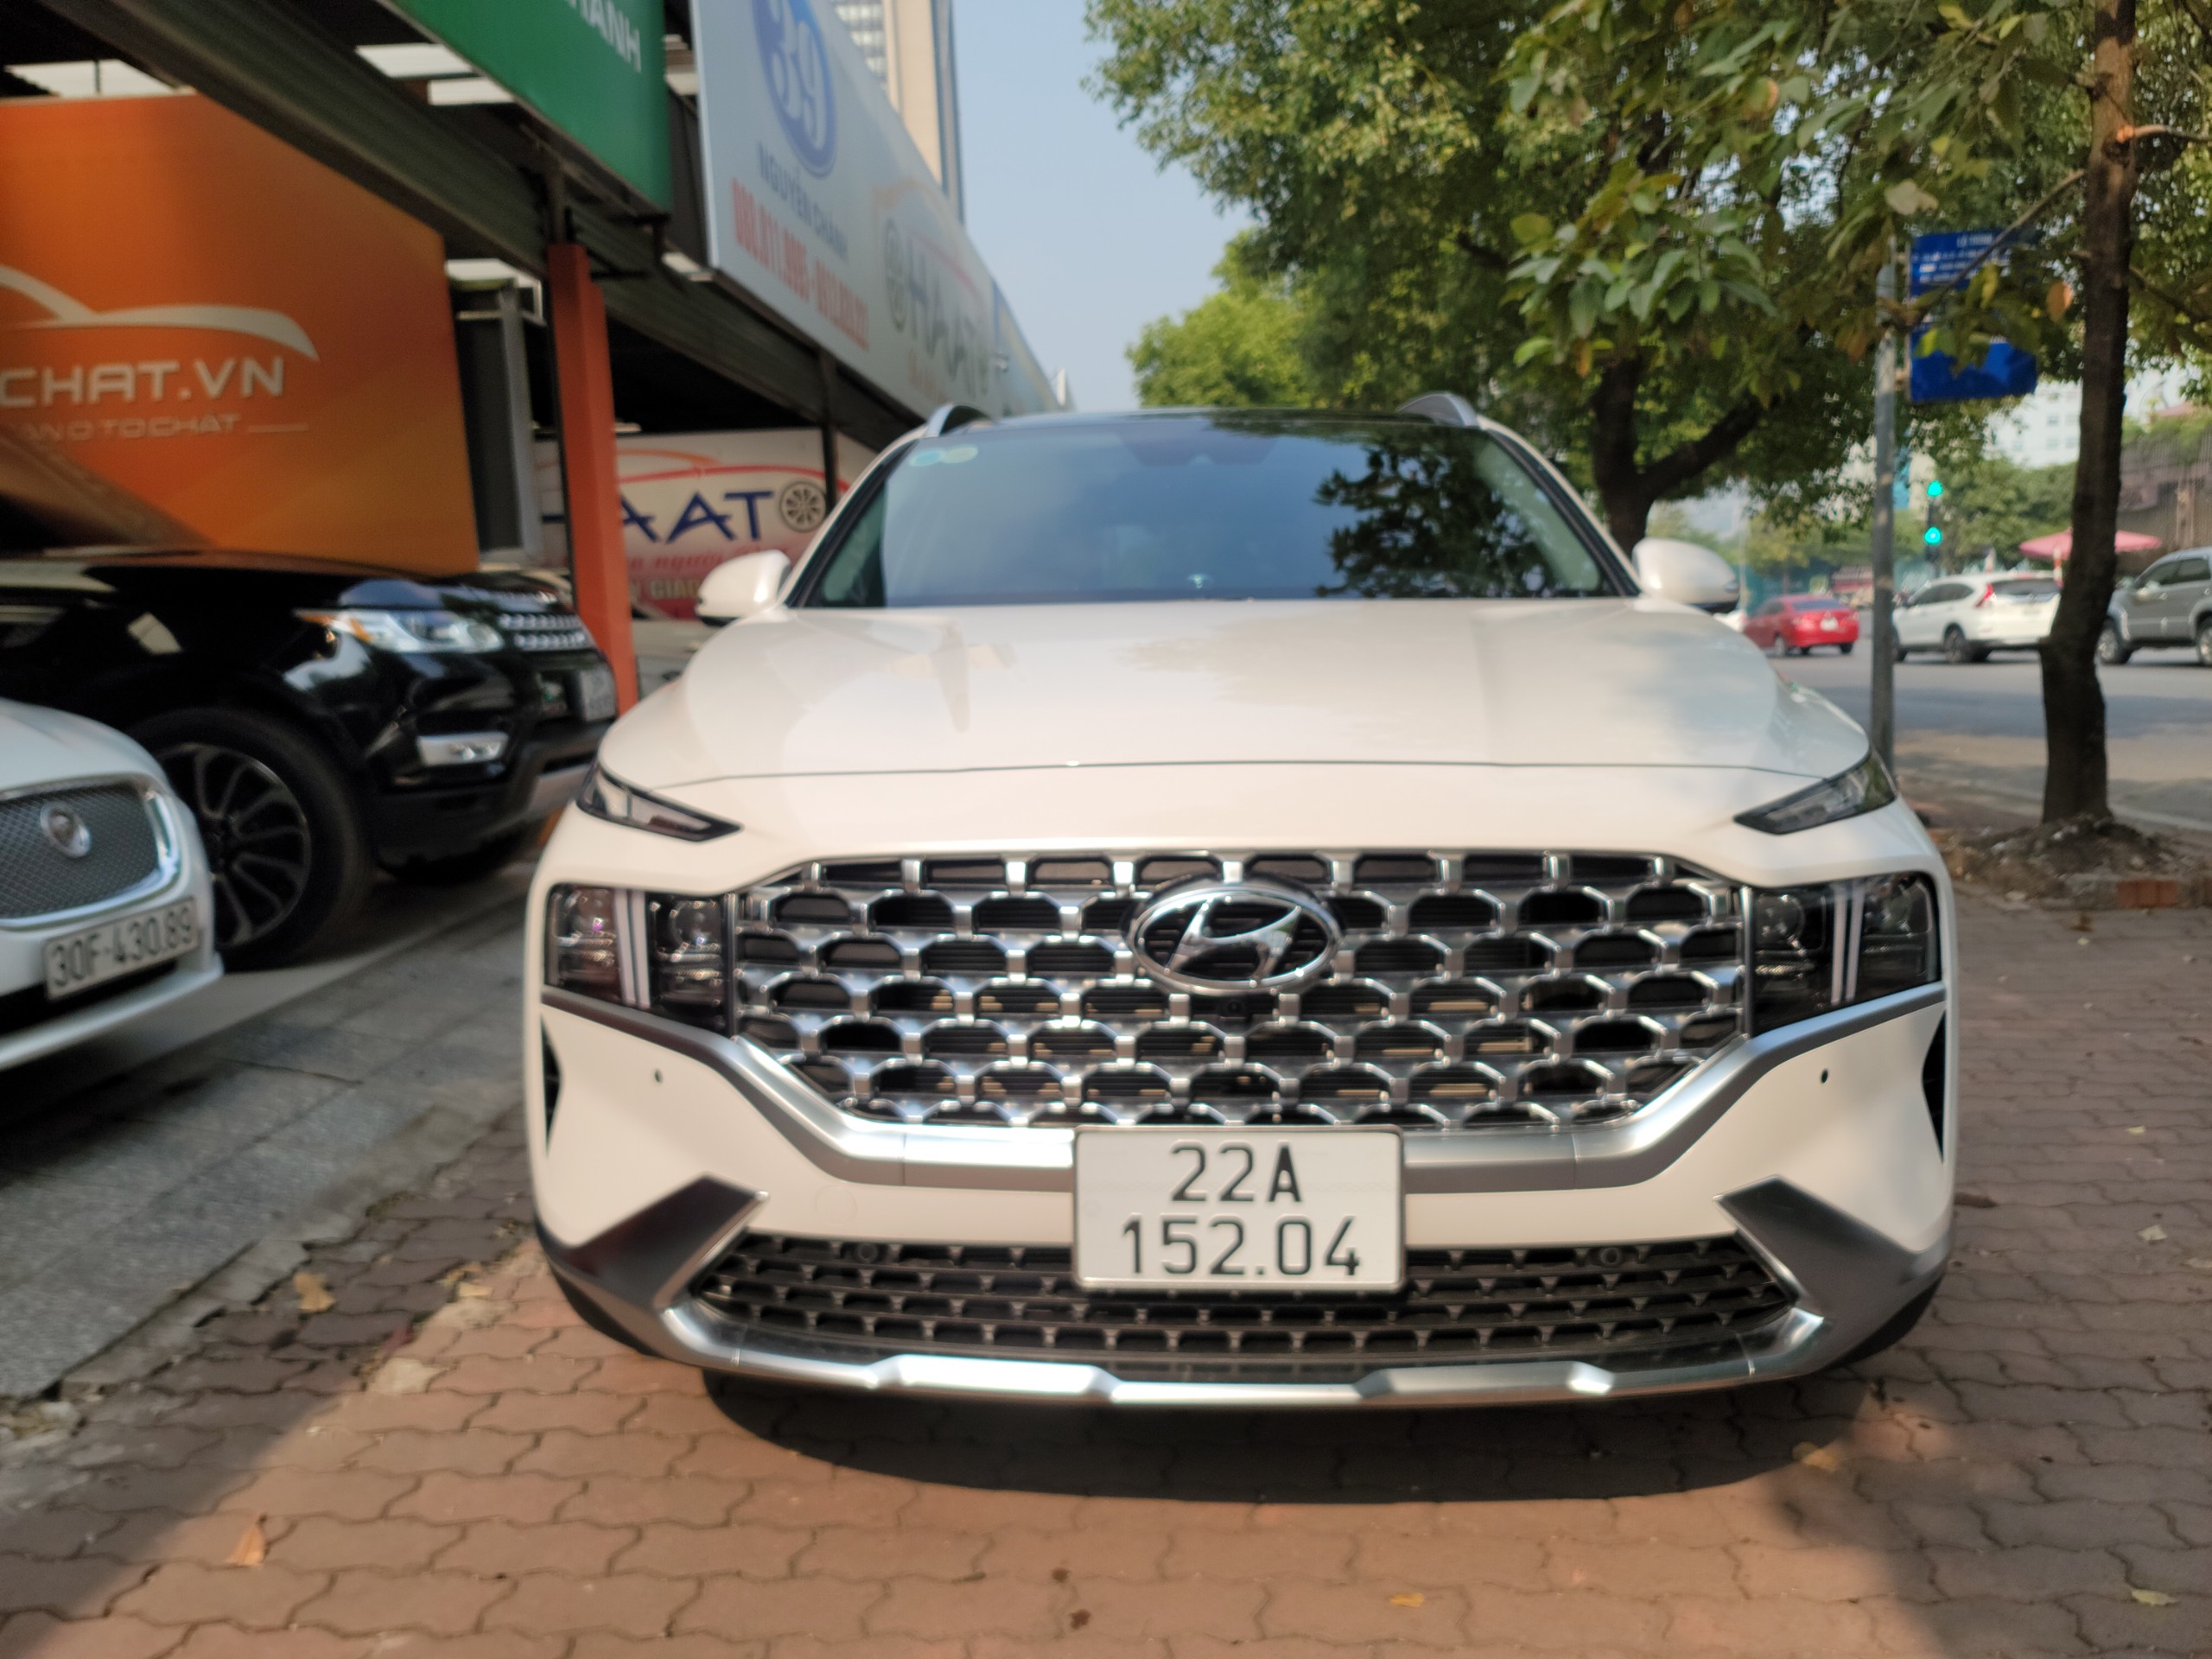 Hyundai santafe 2021 Full máy xăng bản cao cấp 